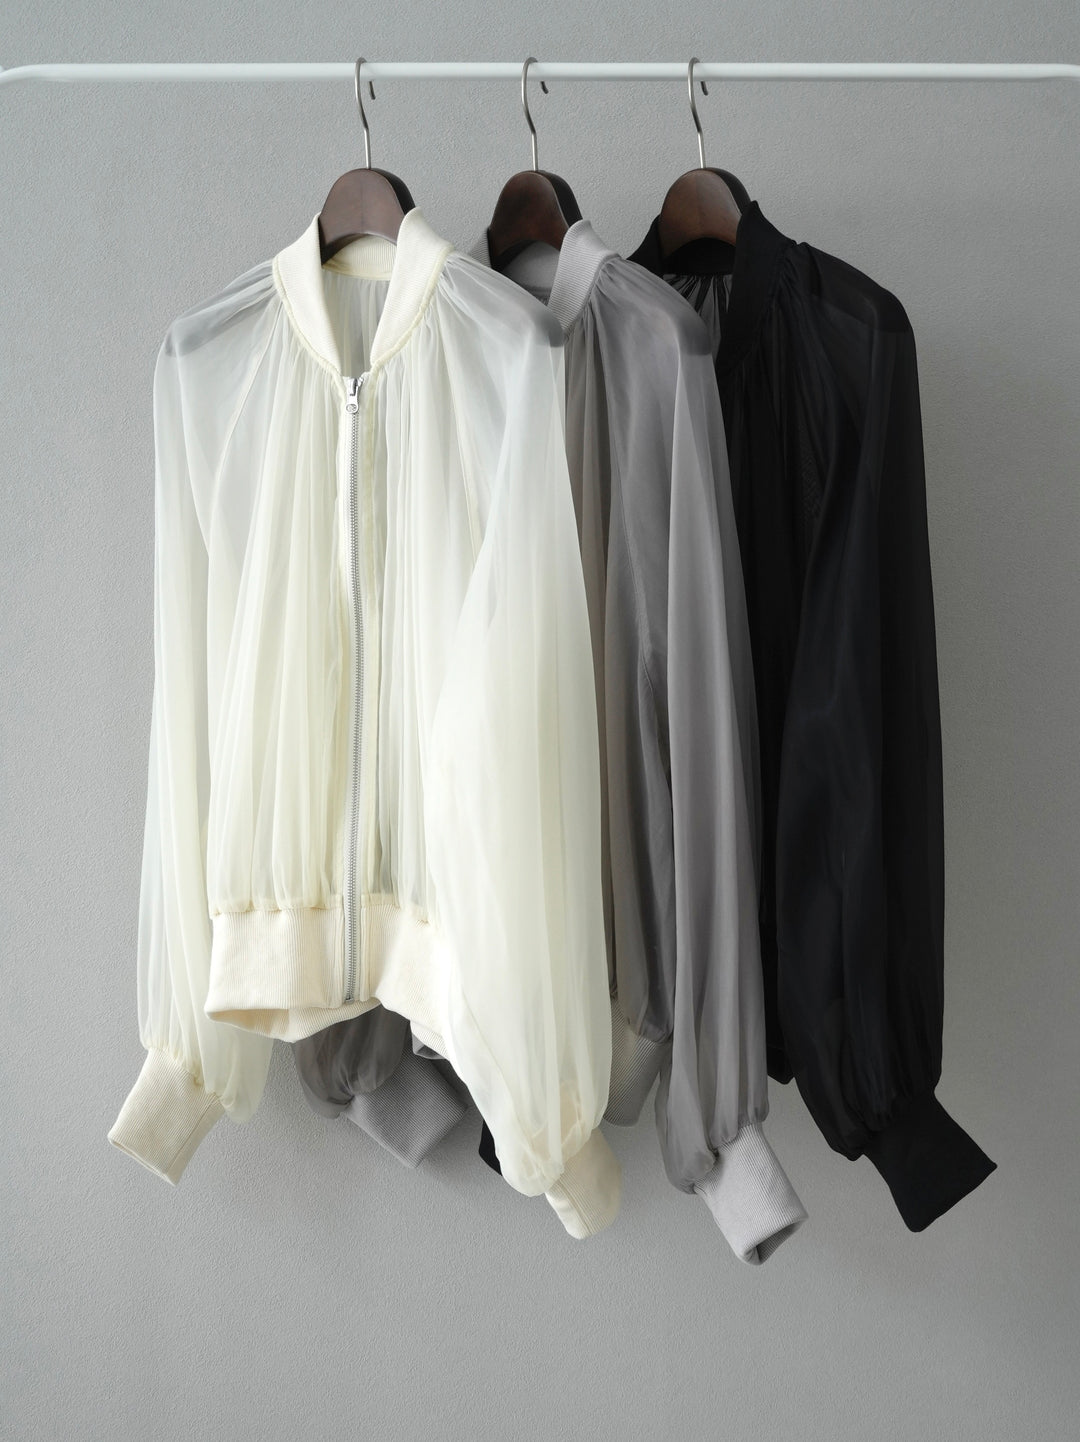 [SET] 透明紗羅紋上衣 + 透明紗羅紋上衣 (2 套)